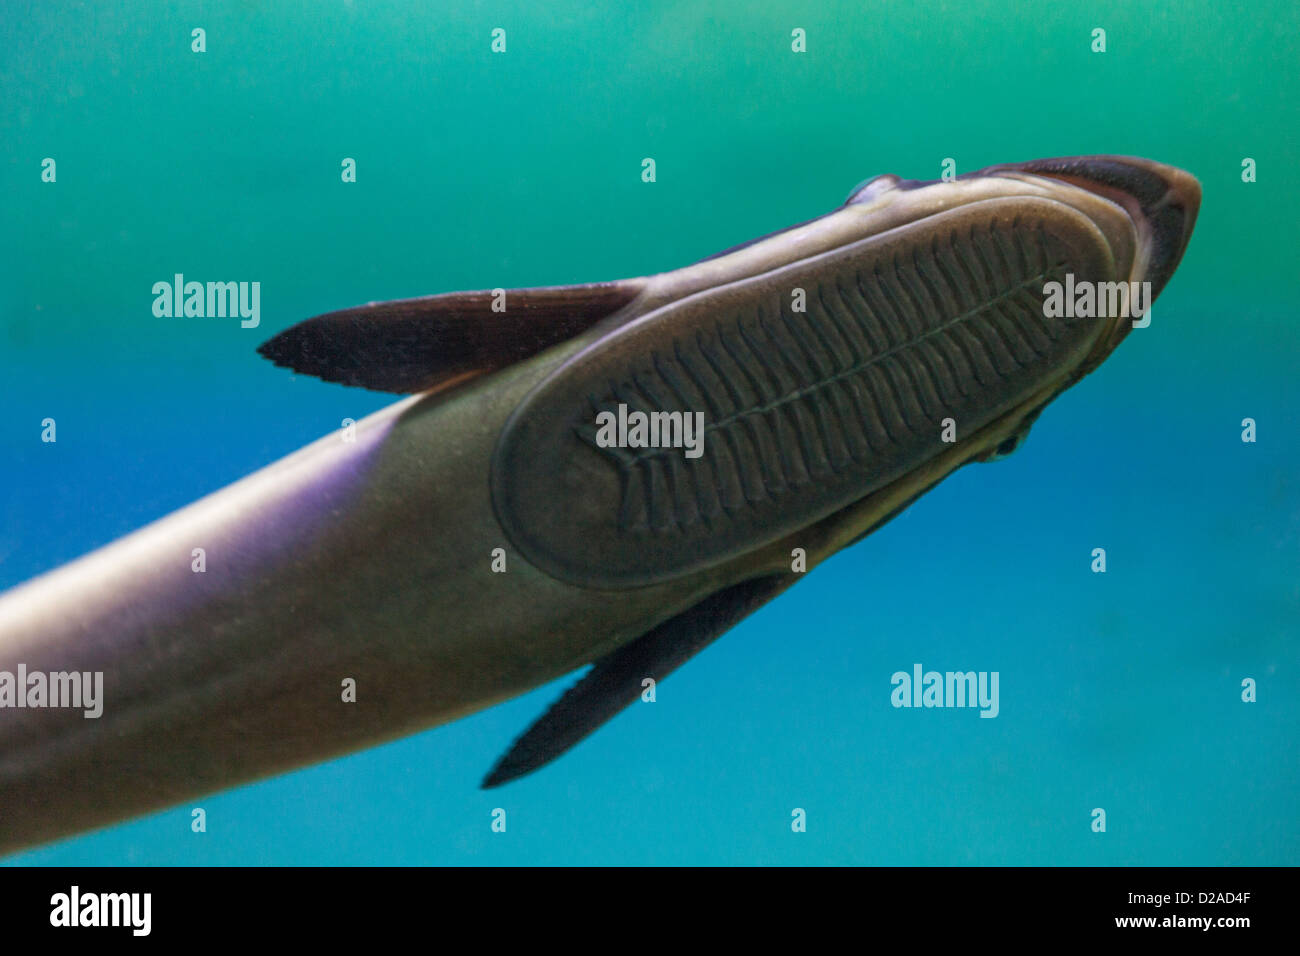 Vietnam, Nha Trang, National Oceanographic Museum, Shark Sucker Fish (Echeneis) Stock Photo